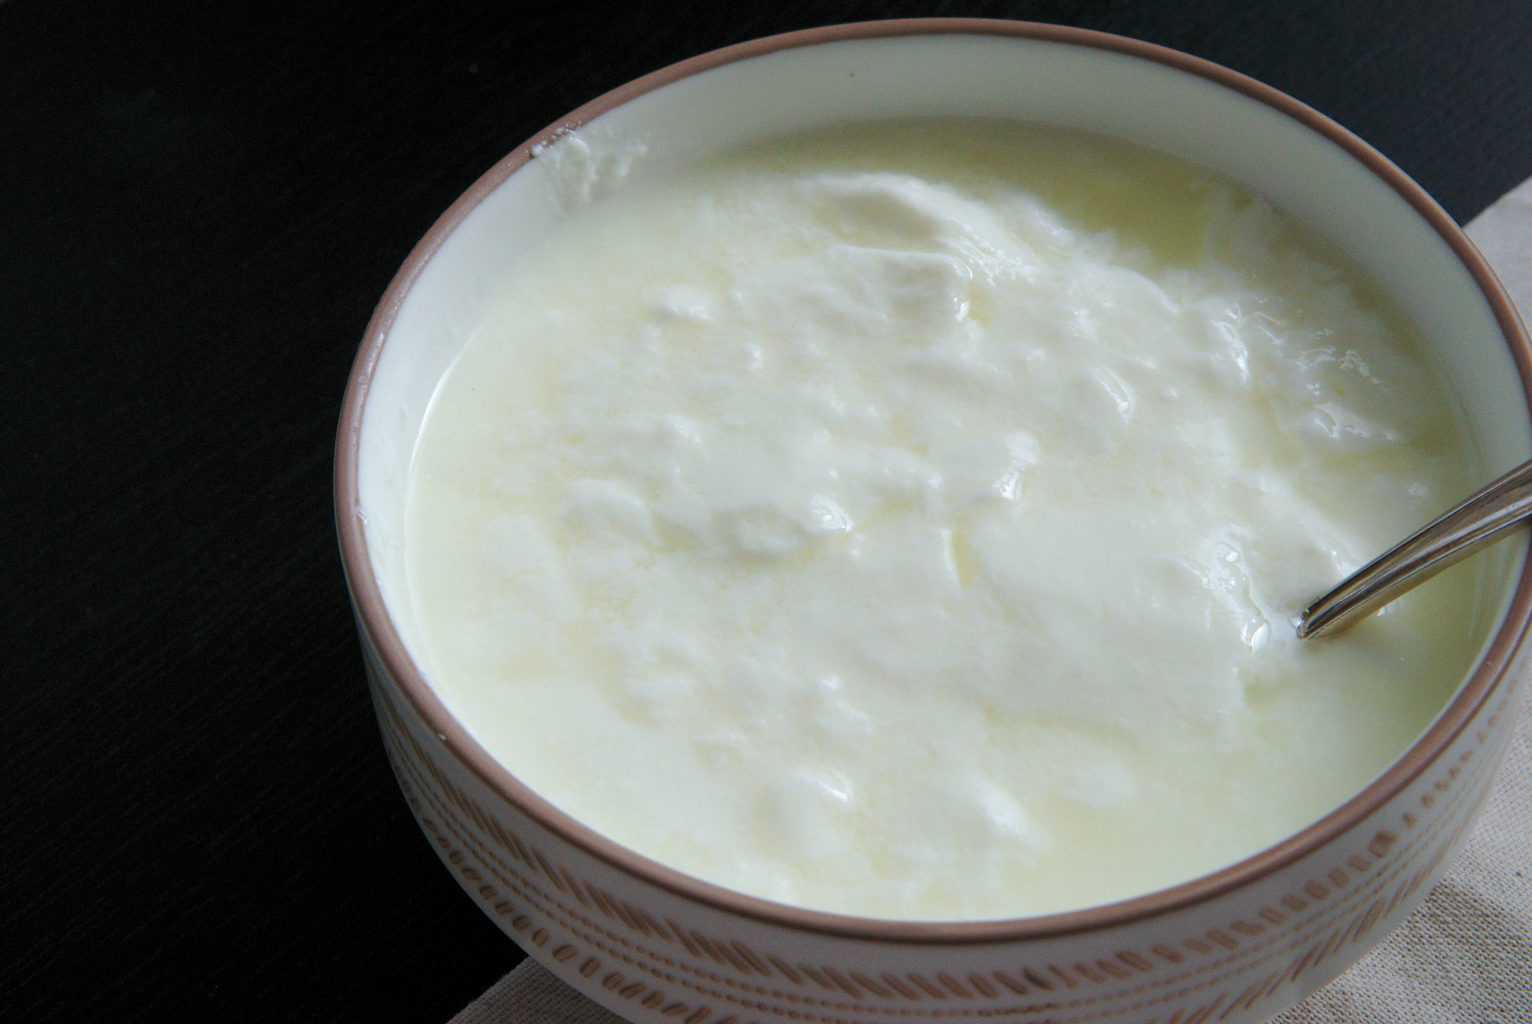 How to make Yogurt from raw milk